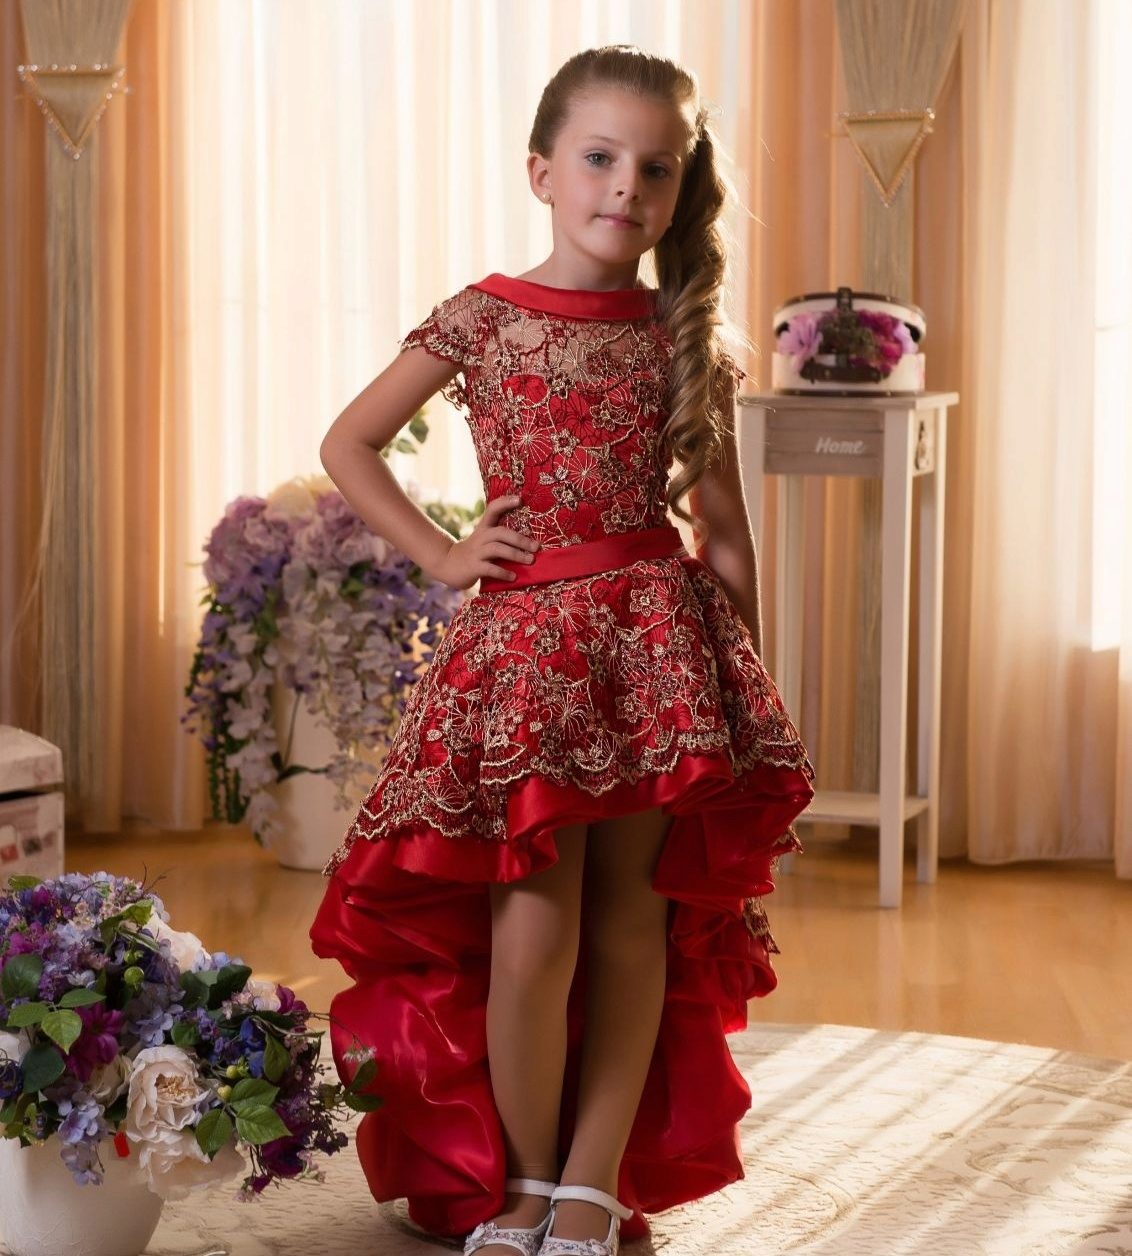 Детское платье из фатина фото: Купить детские платья из фатина в интернет-магазине Lookbuck